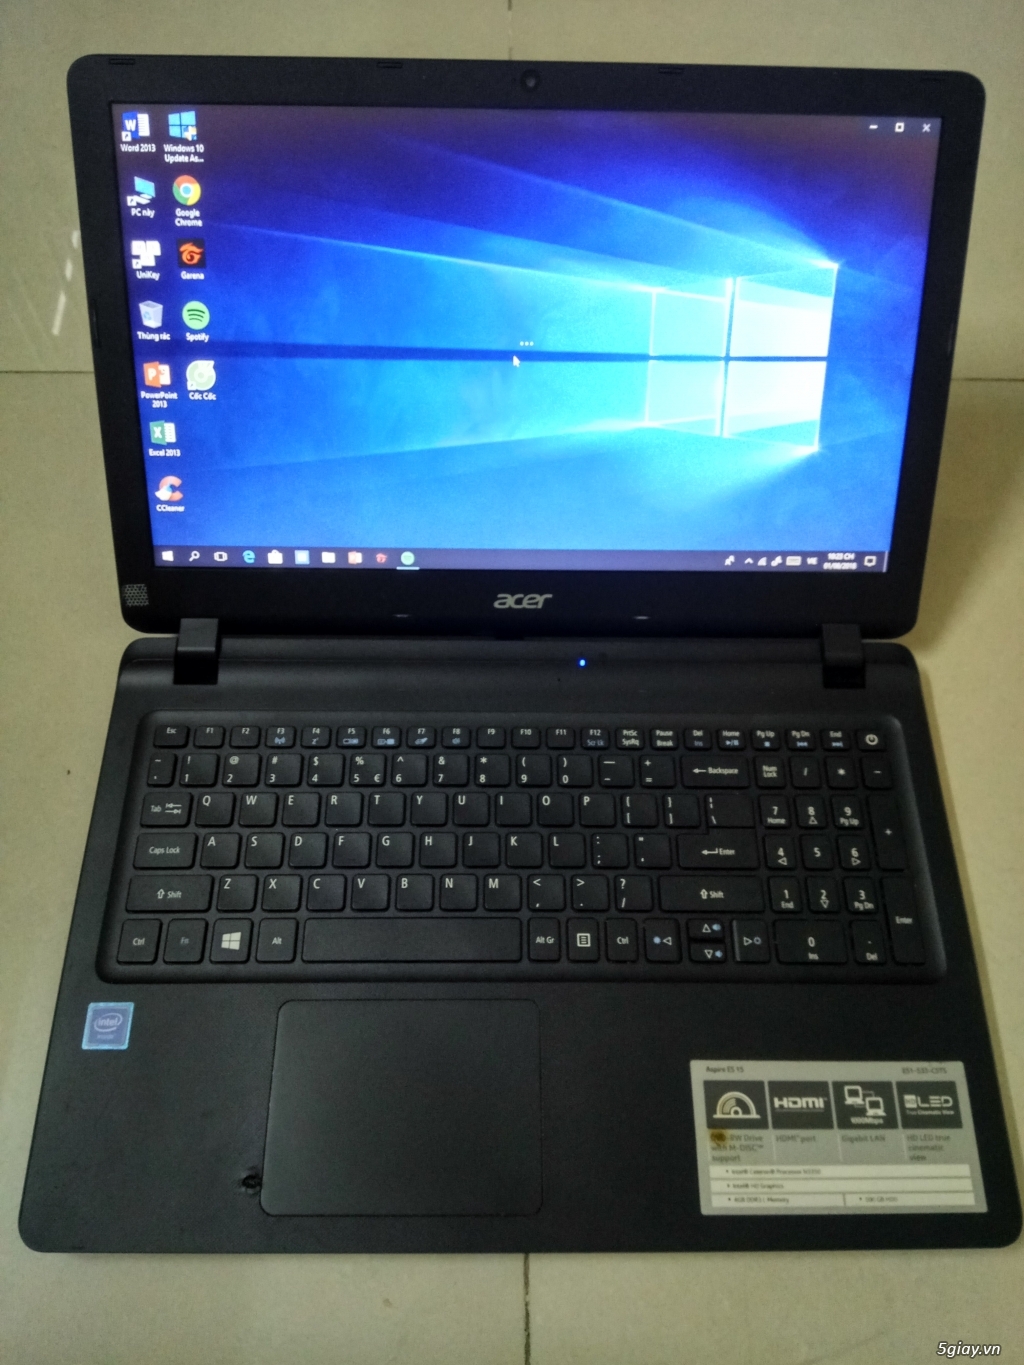 Bán Laptop Acer ES1 533 c5ts màn hình 15.6 inches giá mềm.... - 1